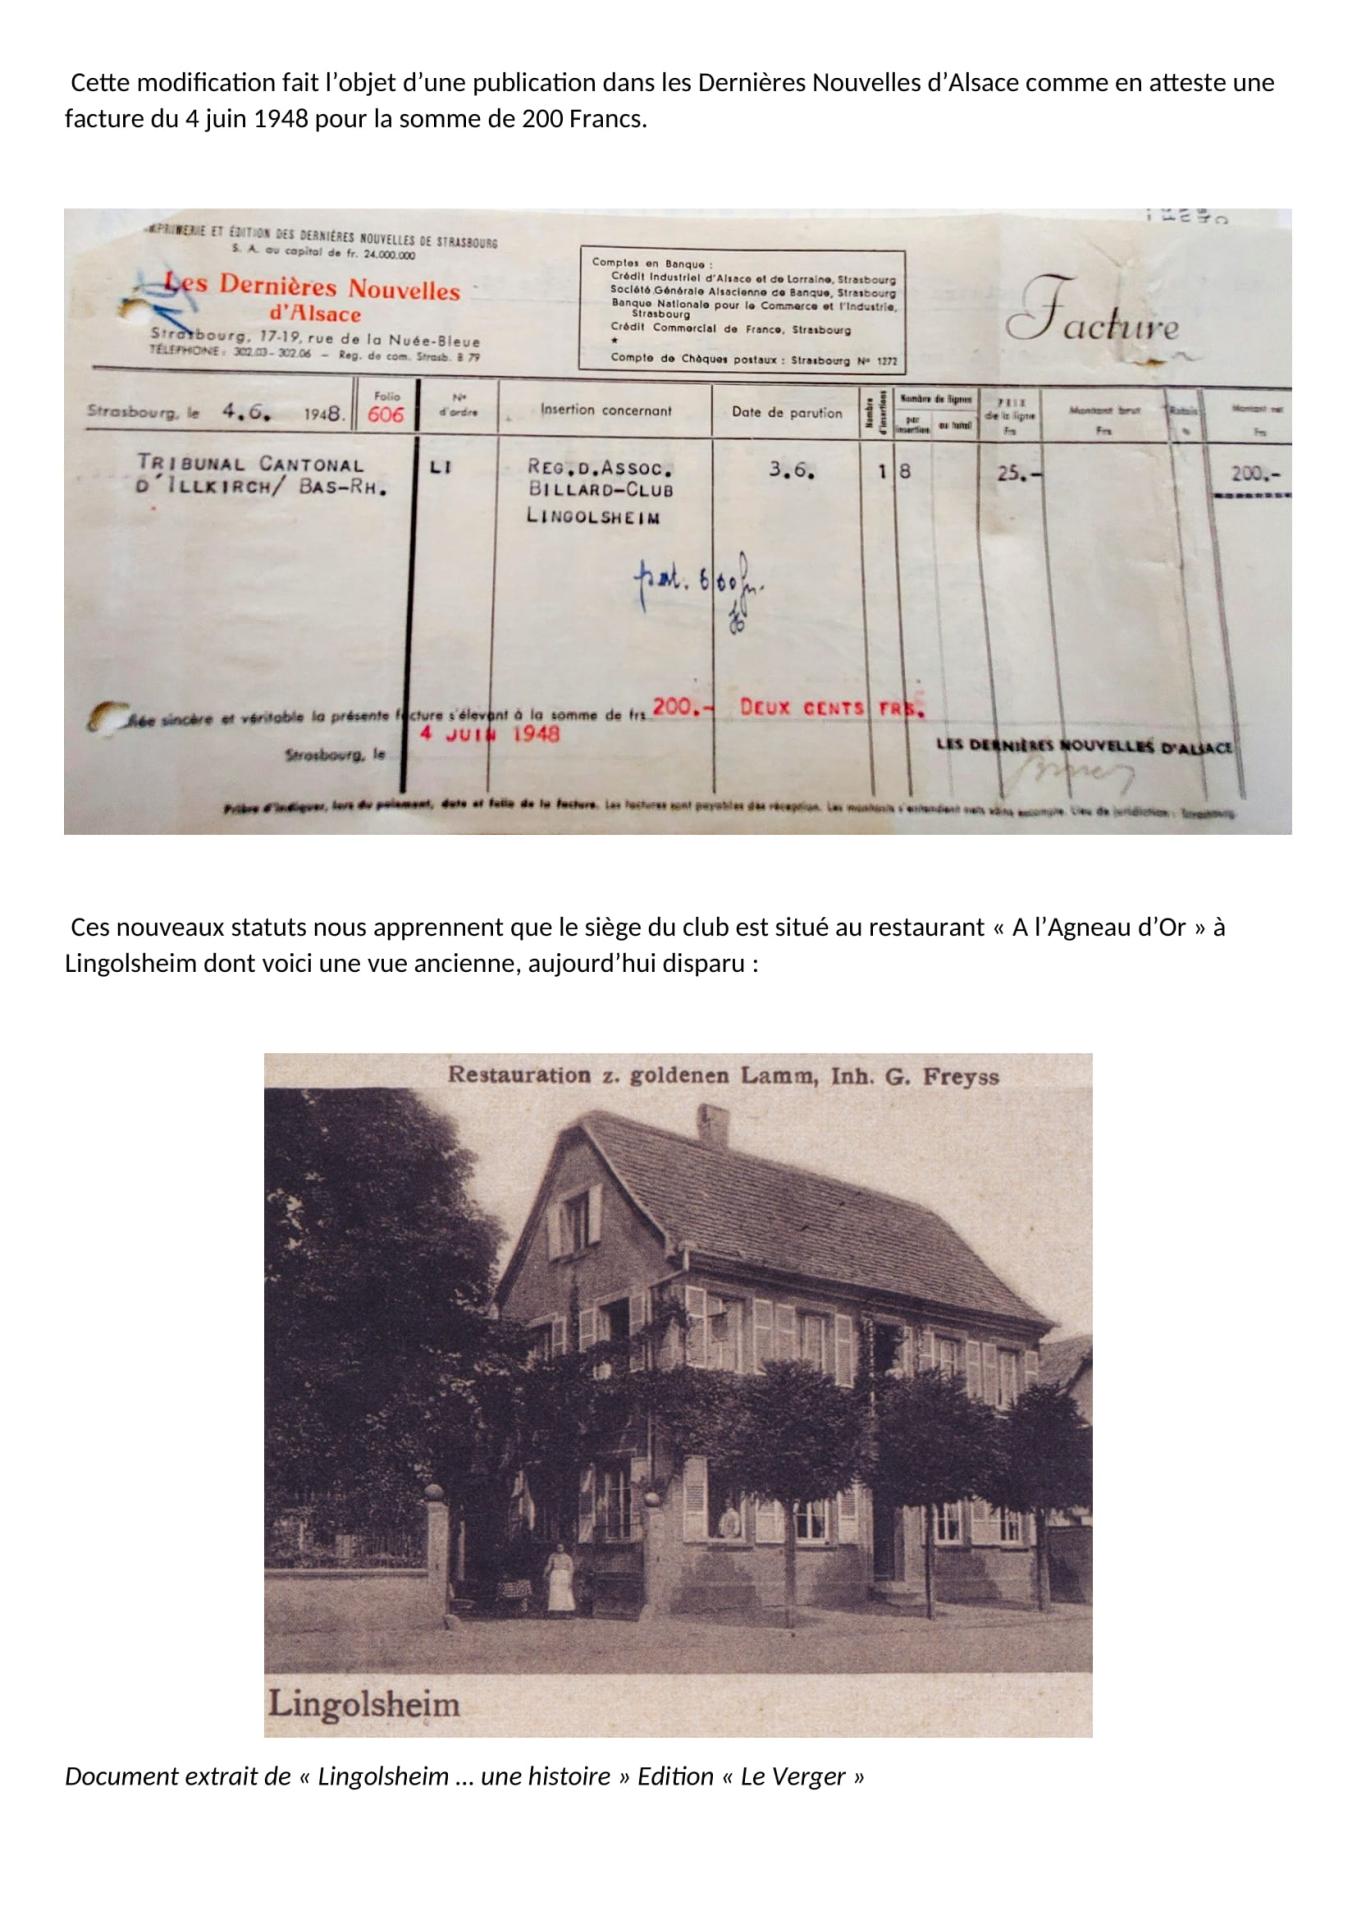 Historique succinct du billard club 1933 lingolsheim 04